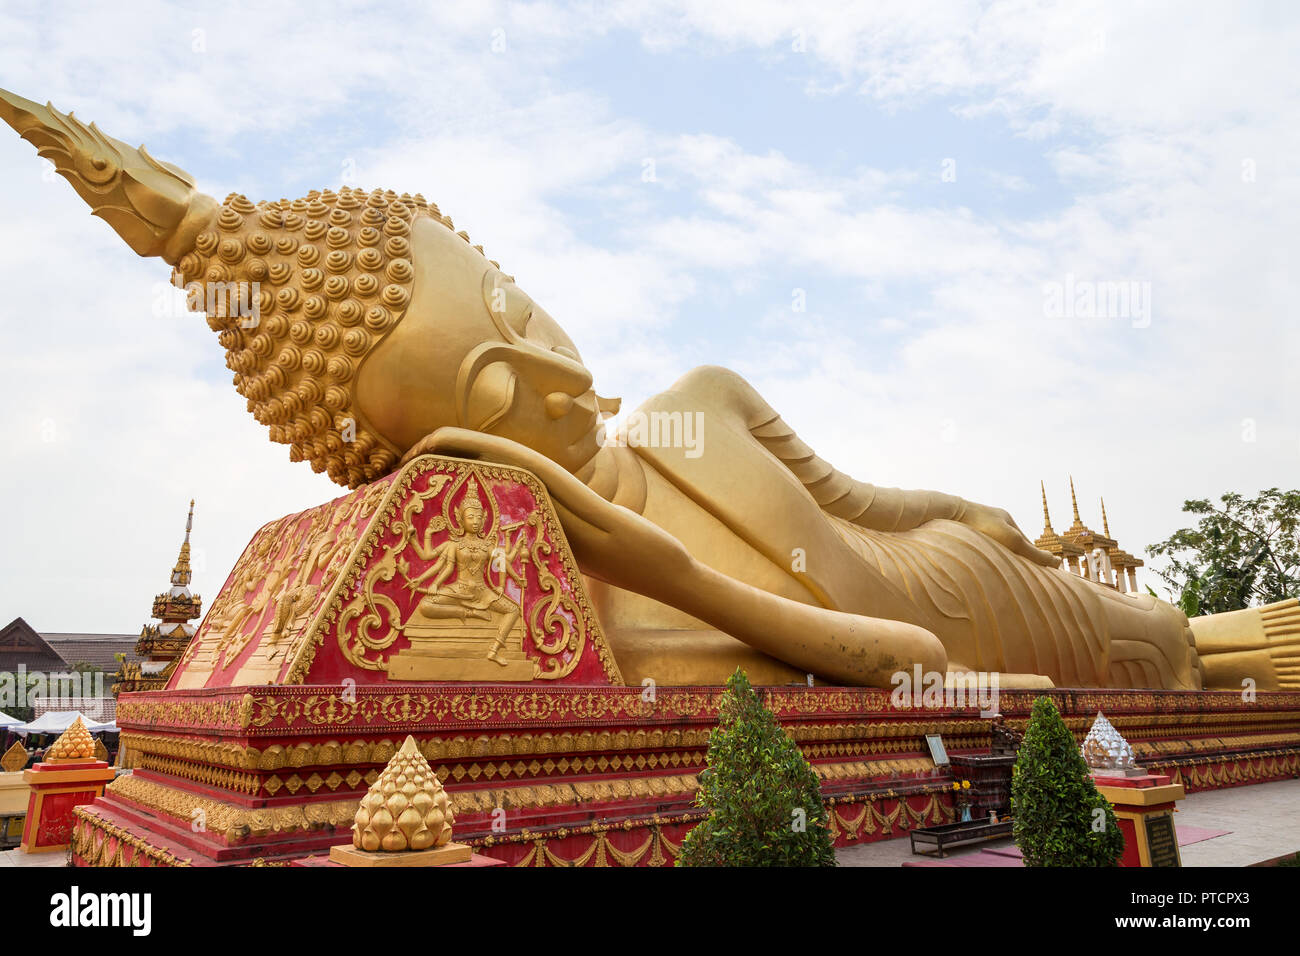 Grandi reclinabili dorato statua del Buddha al Wat That Luang Tai tempio di Vientiane, Laos. Foto Stock